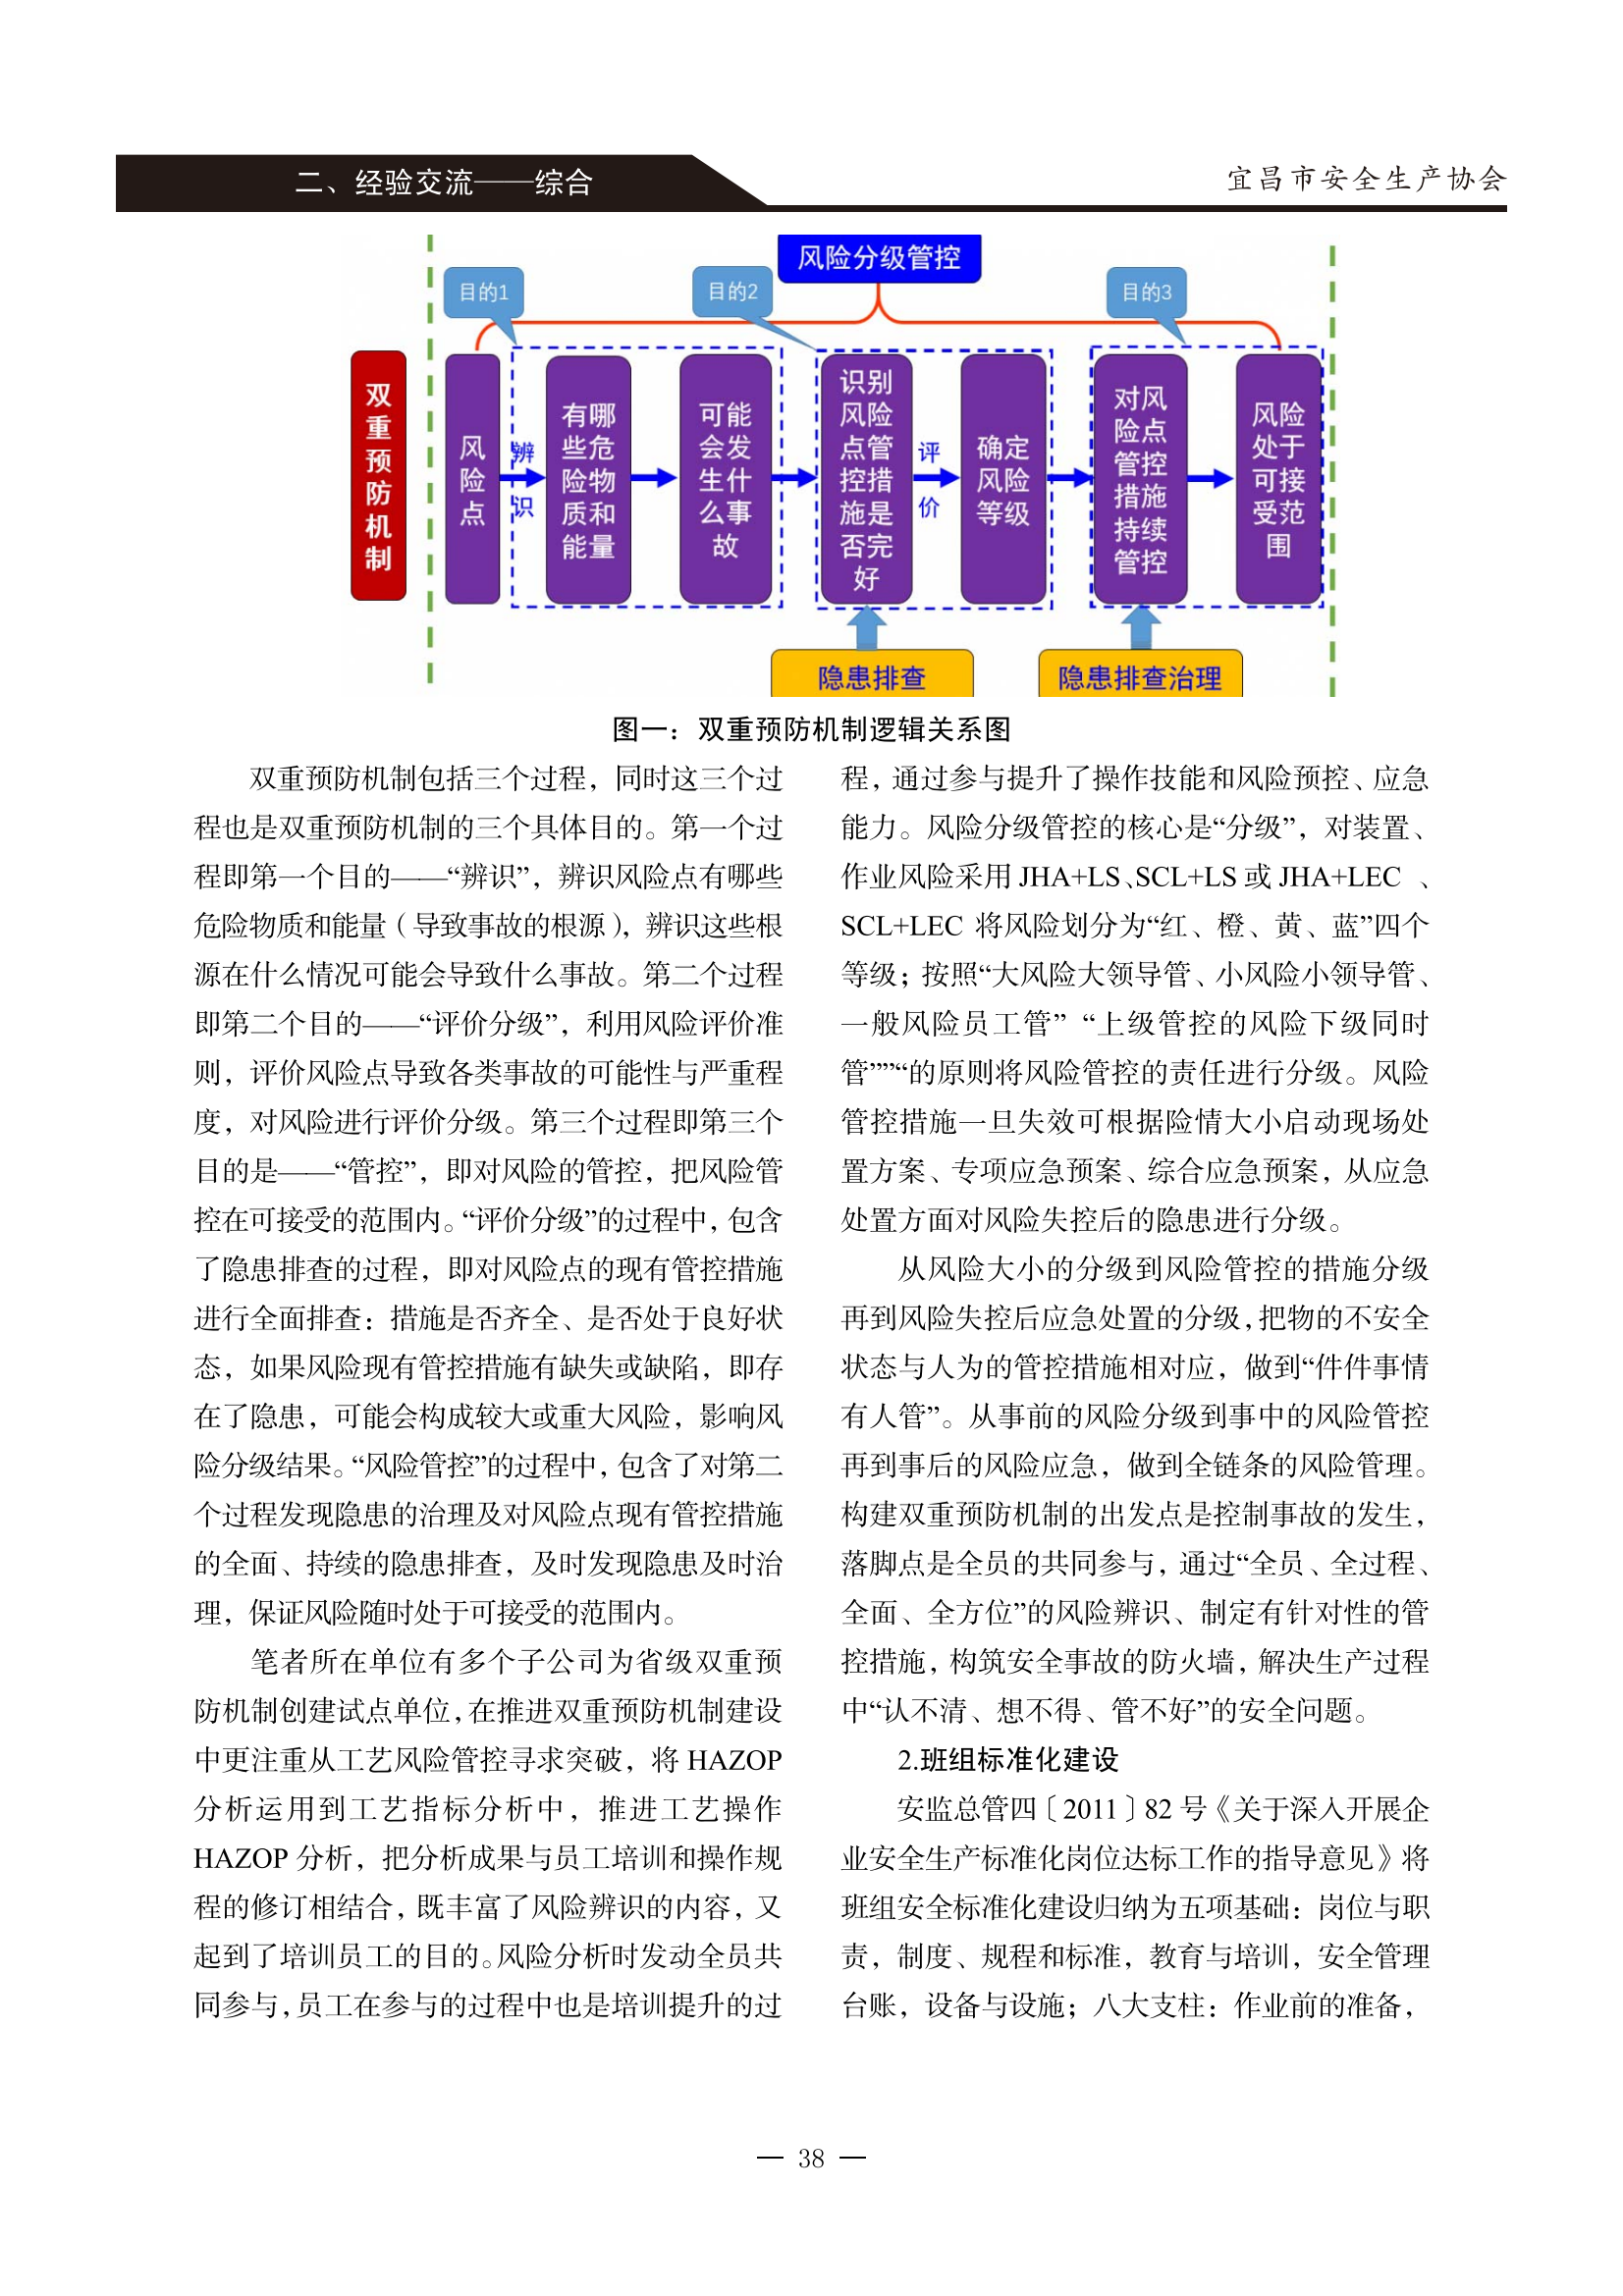 宜昌安全生产期刊第一期_43.png